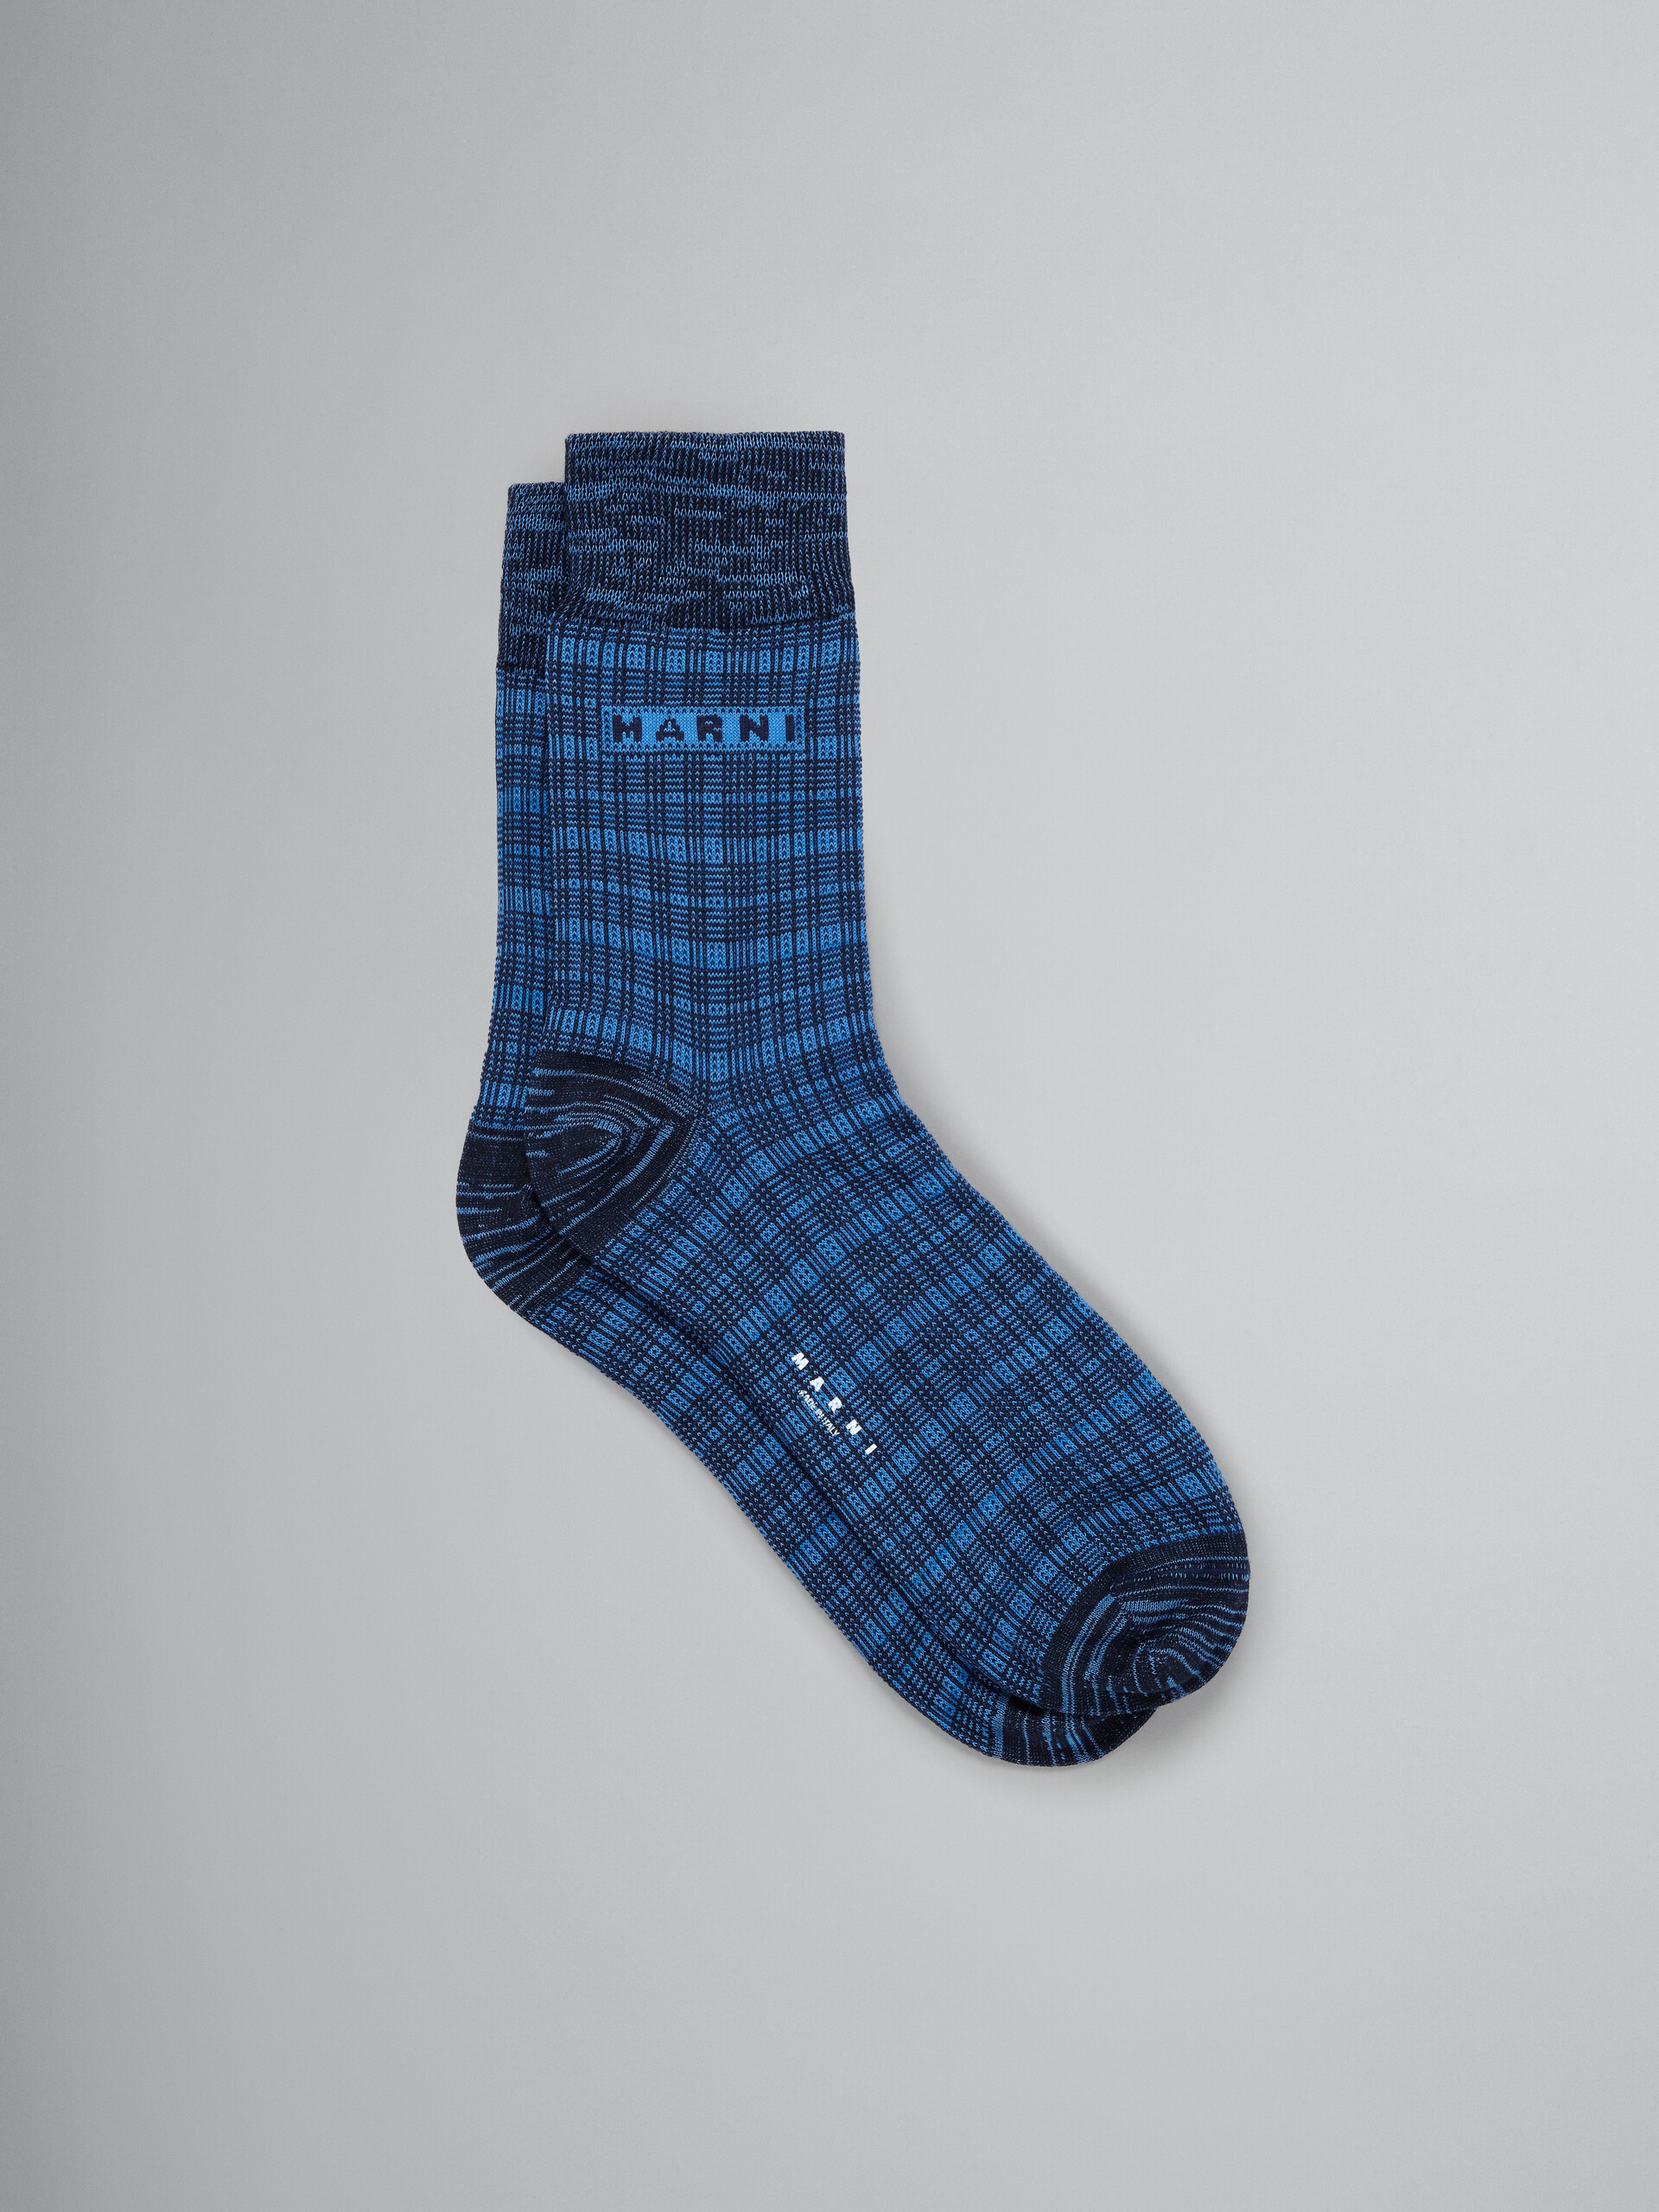 Blaue Socken mit Logo-Einsatz - Socken - Image 1